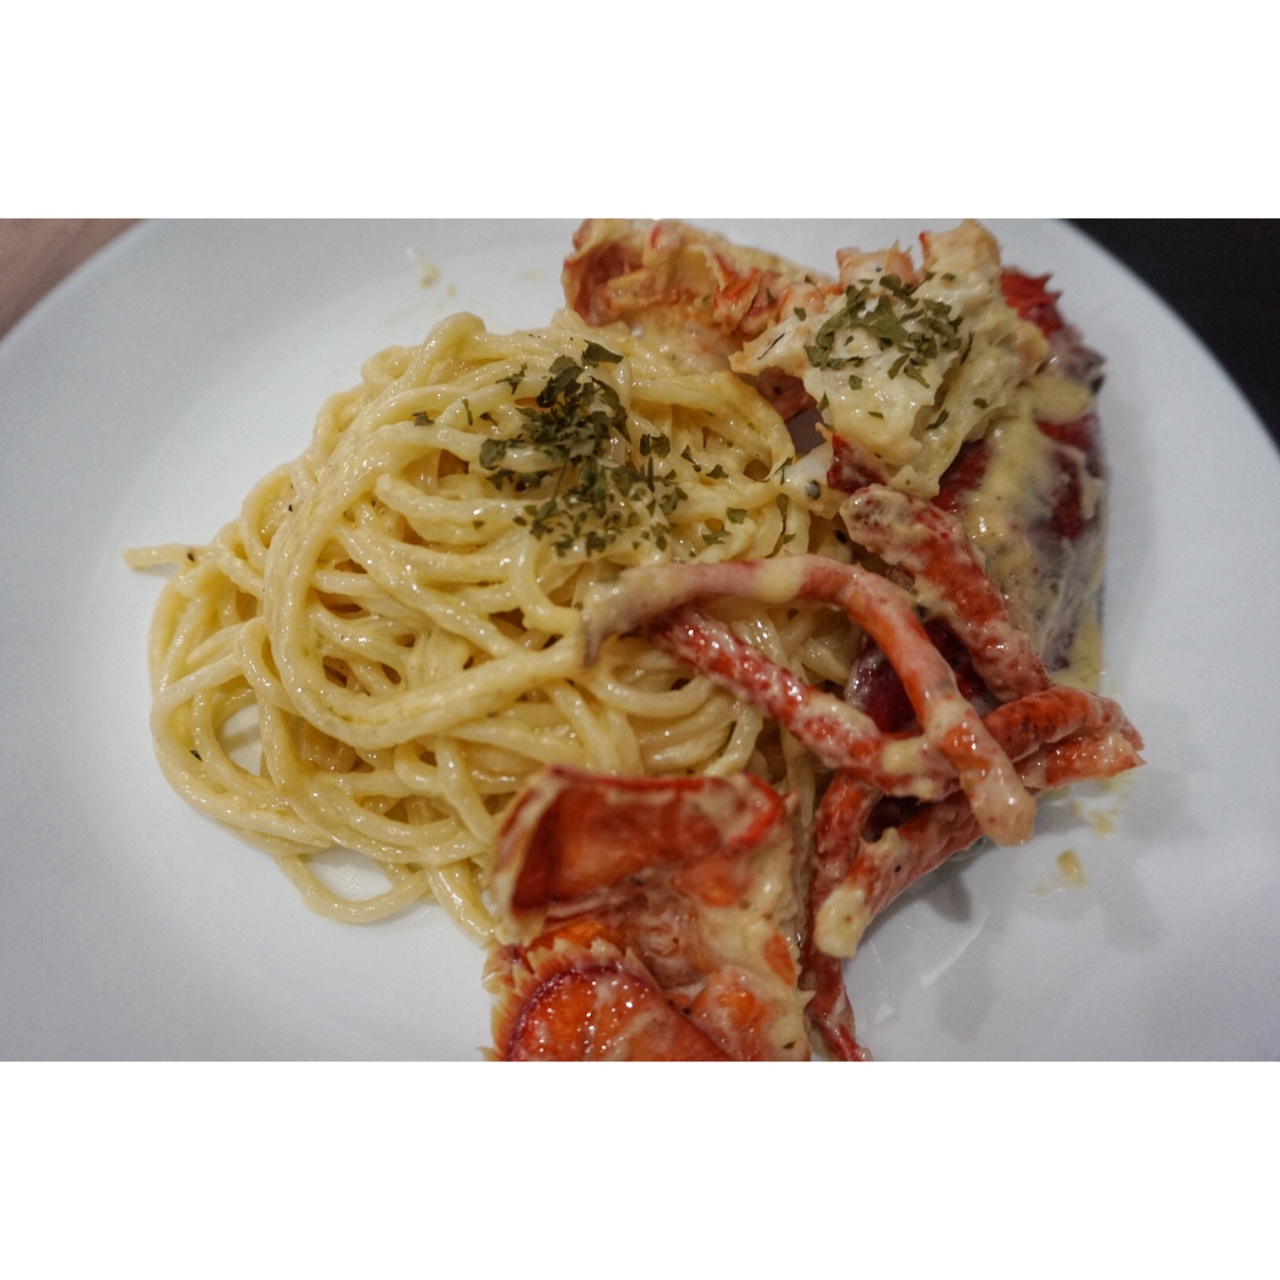 龙虾奶油意大利面菜谱
Lobster Cheese Sauce Pasta Recipe